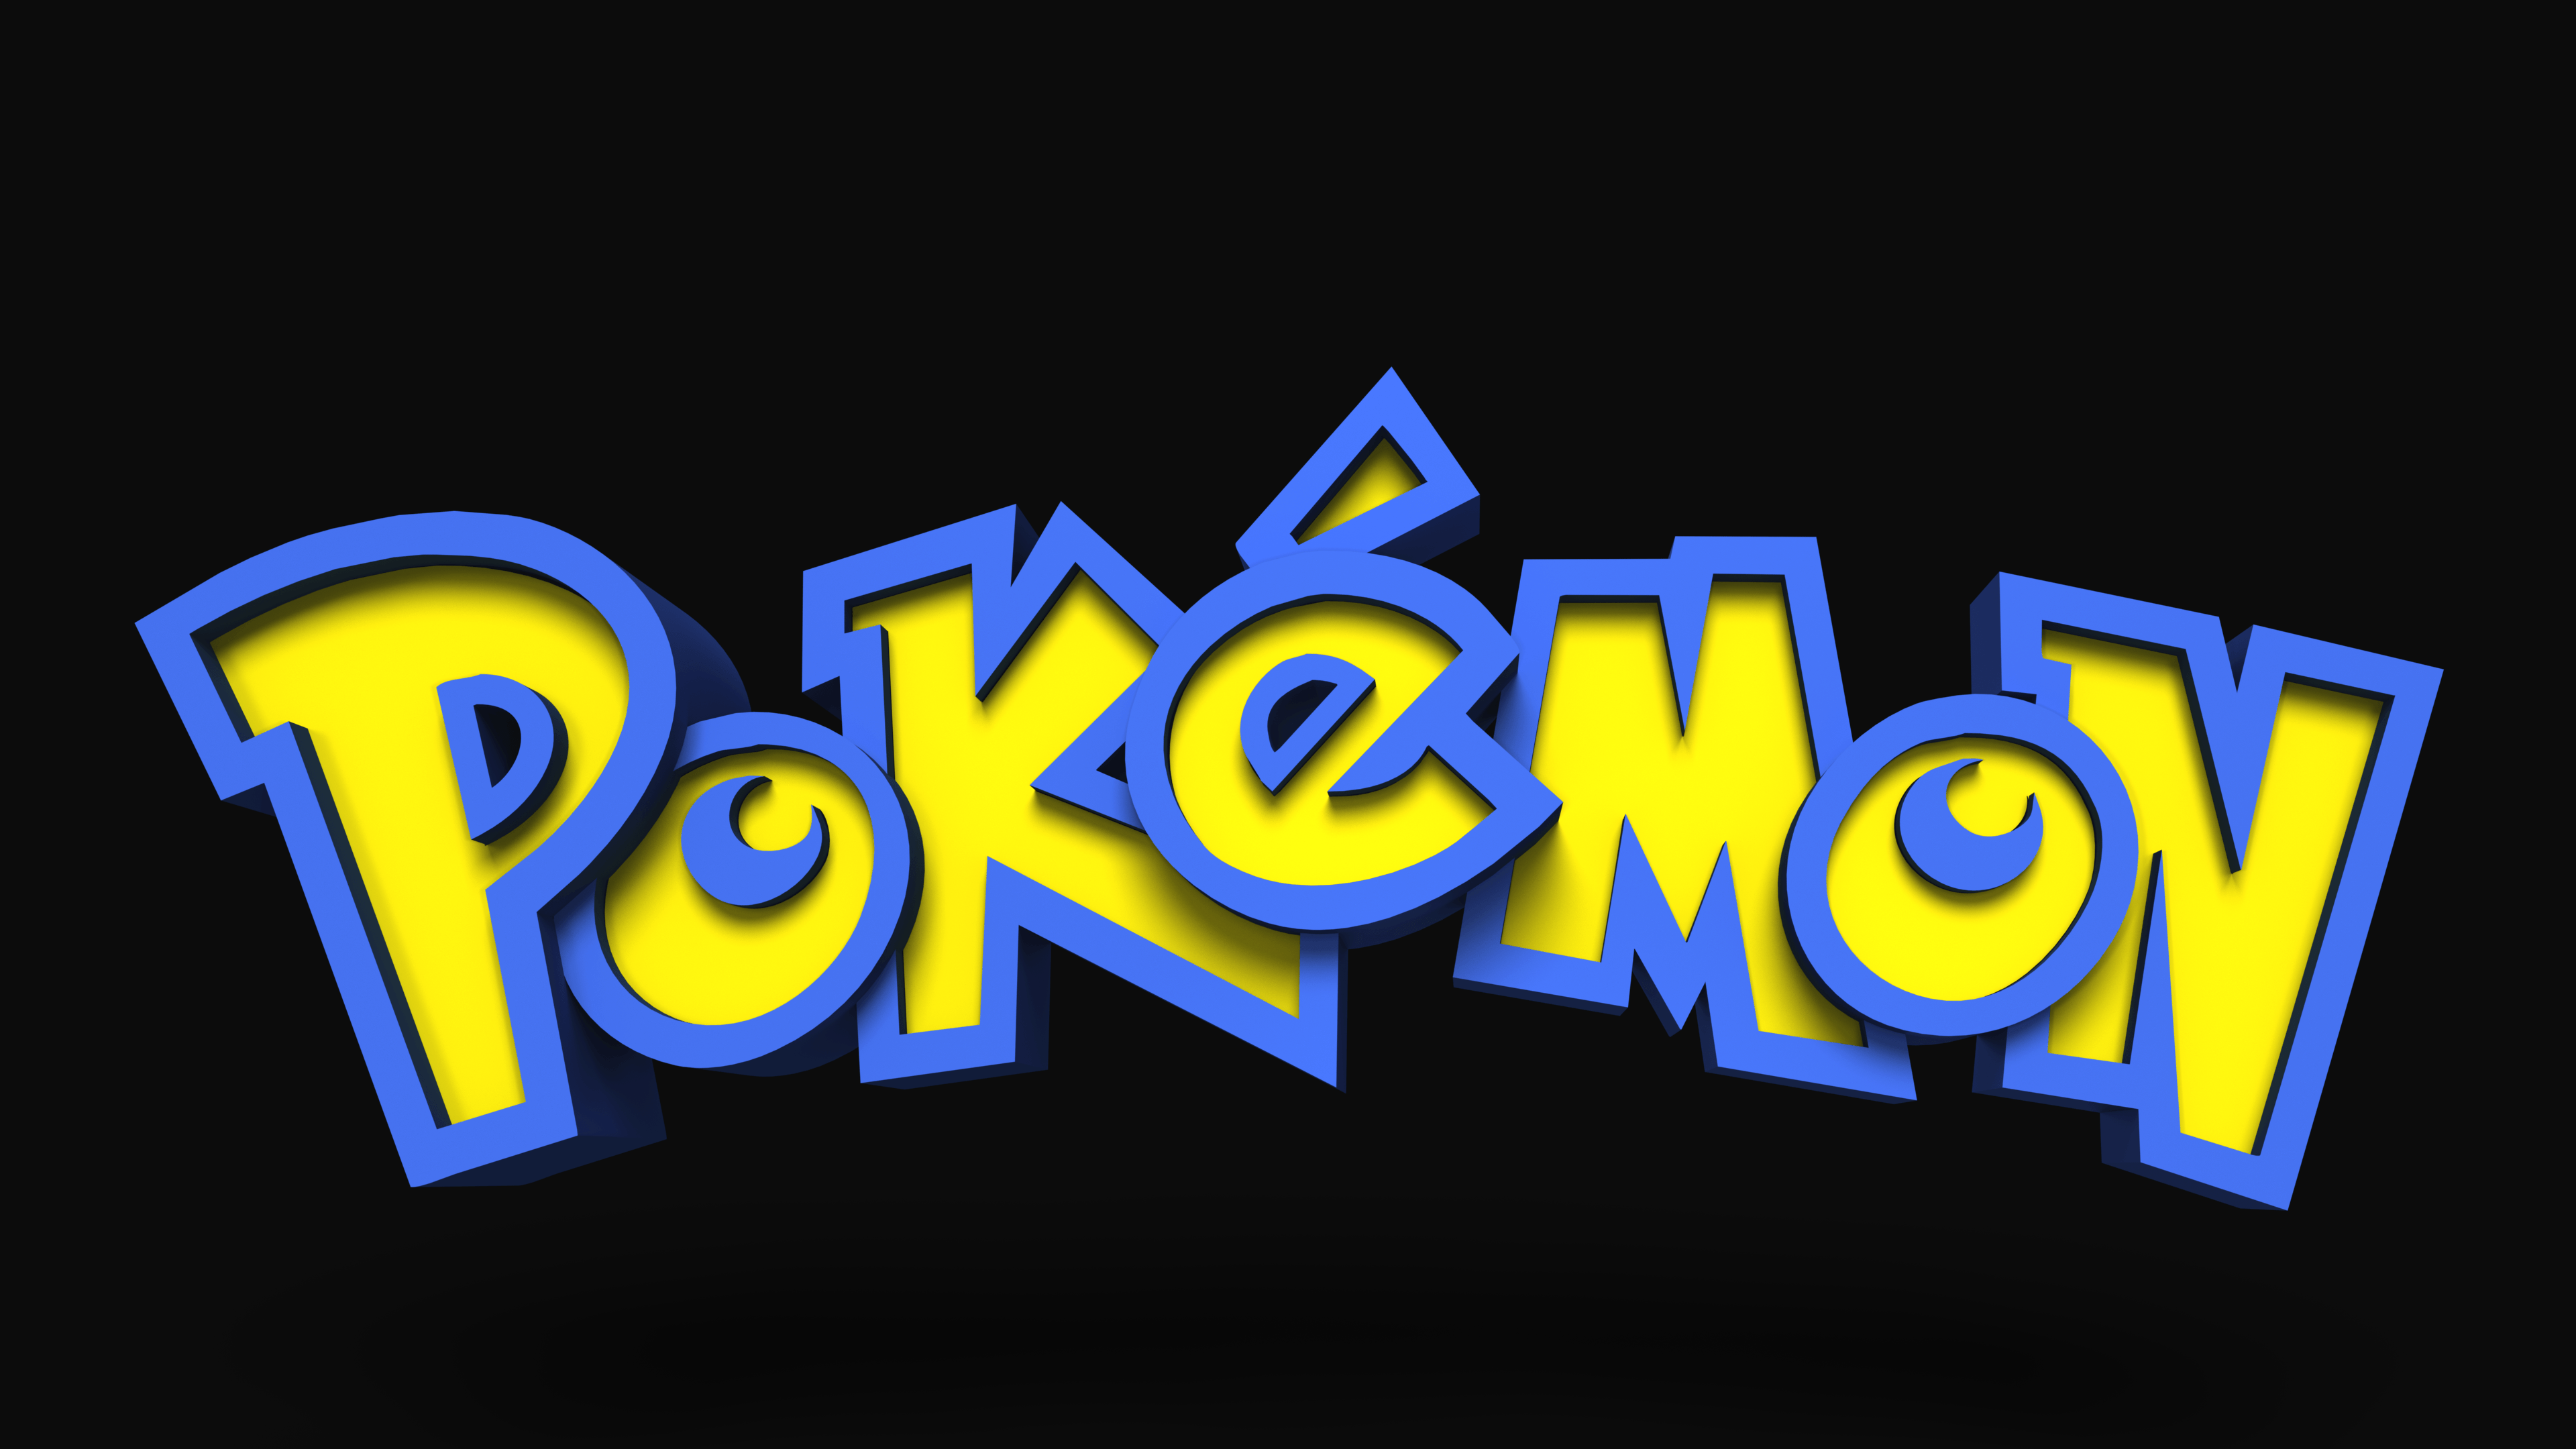 Pokeman Logo - OC I rendered the Pokemon logo in 3D using only Photohop